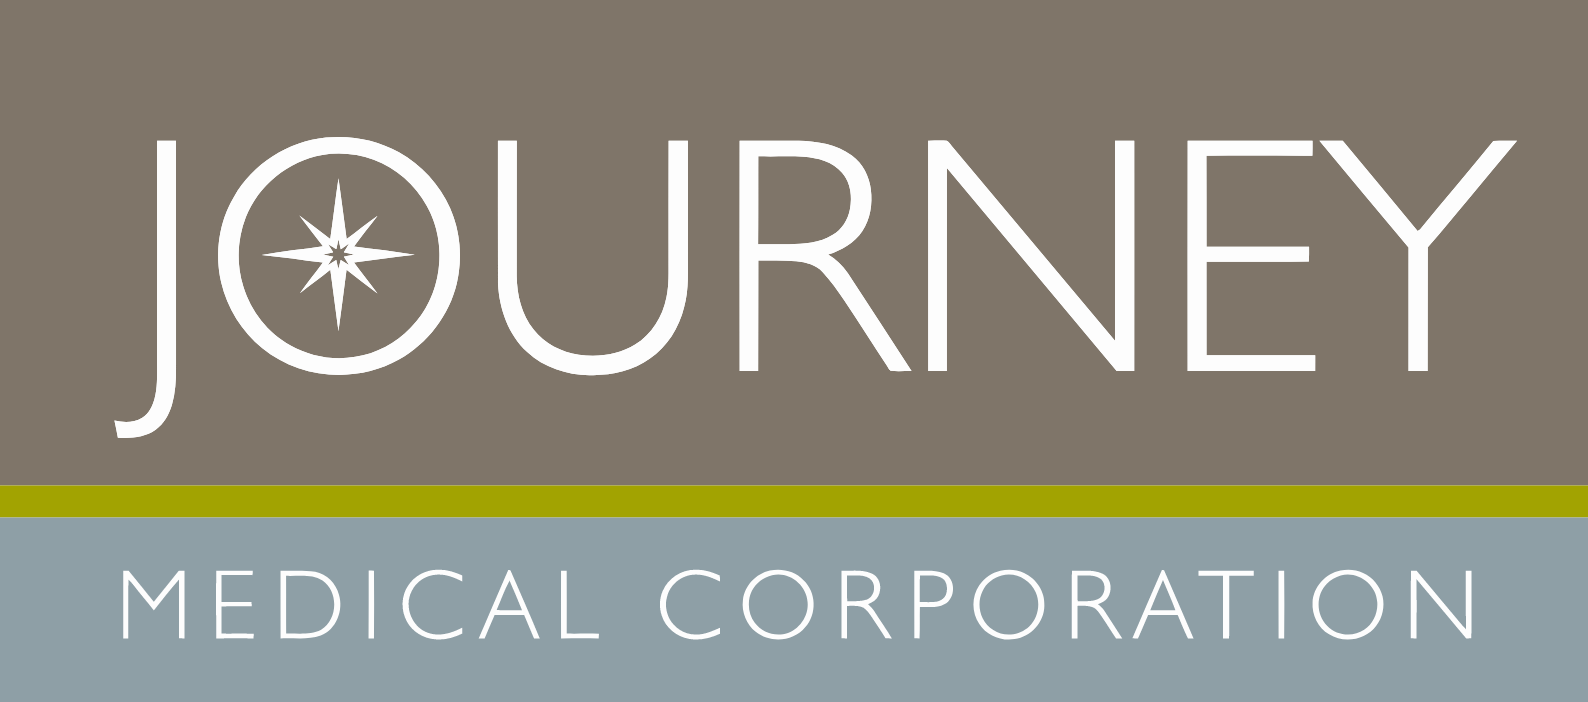 Journey Medical logo large (transparent PNG)